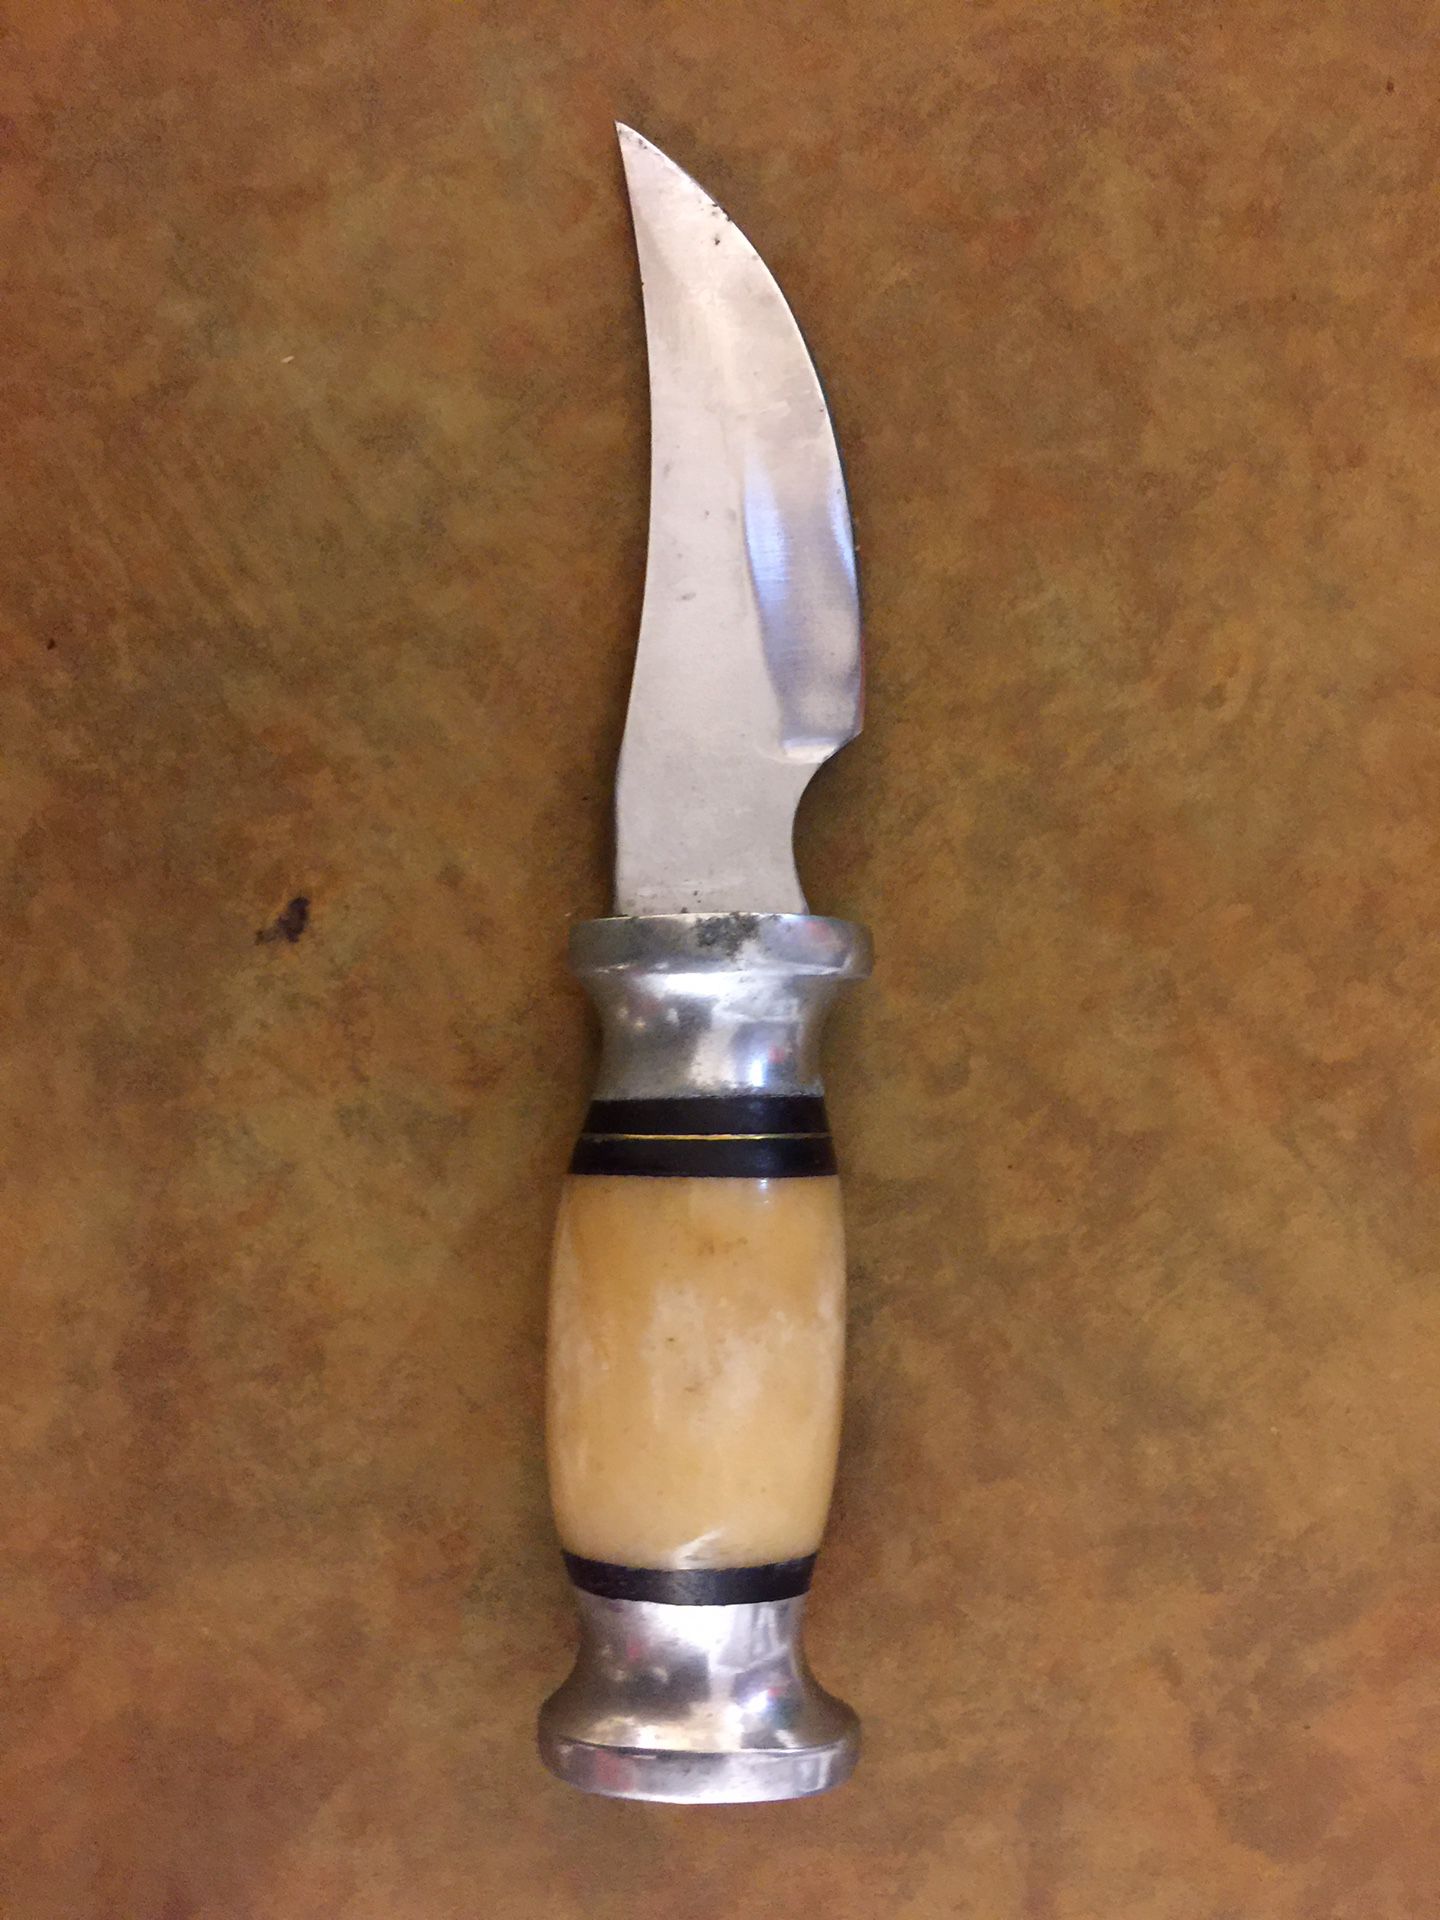 Home made knife